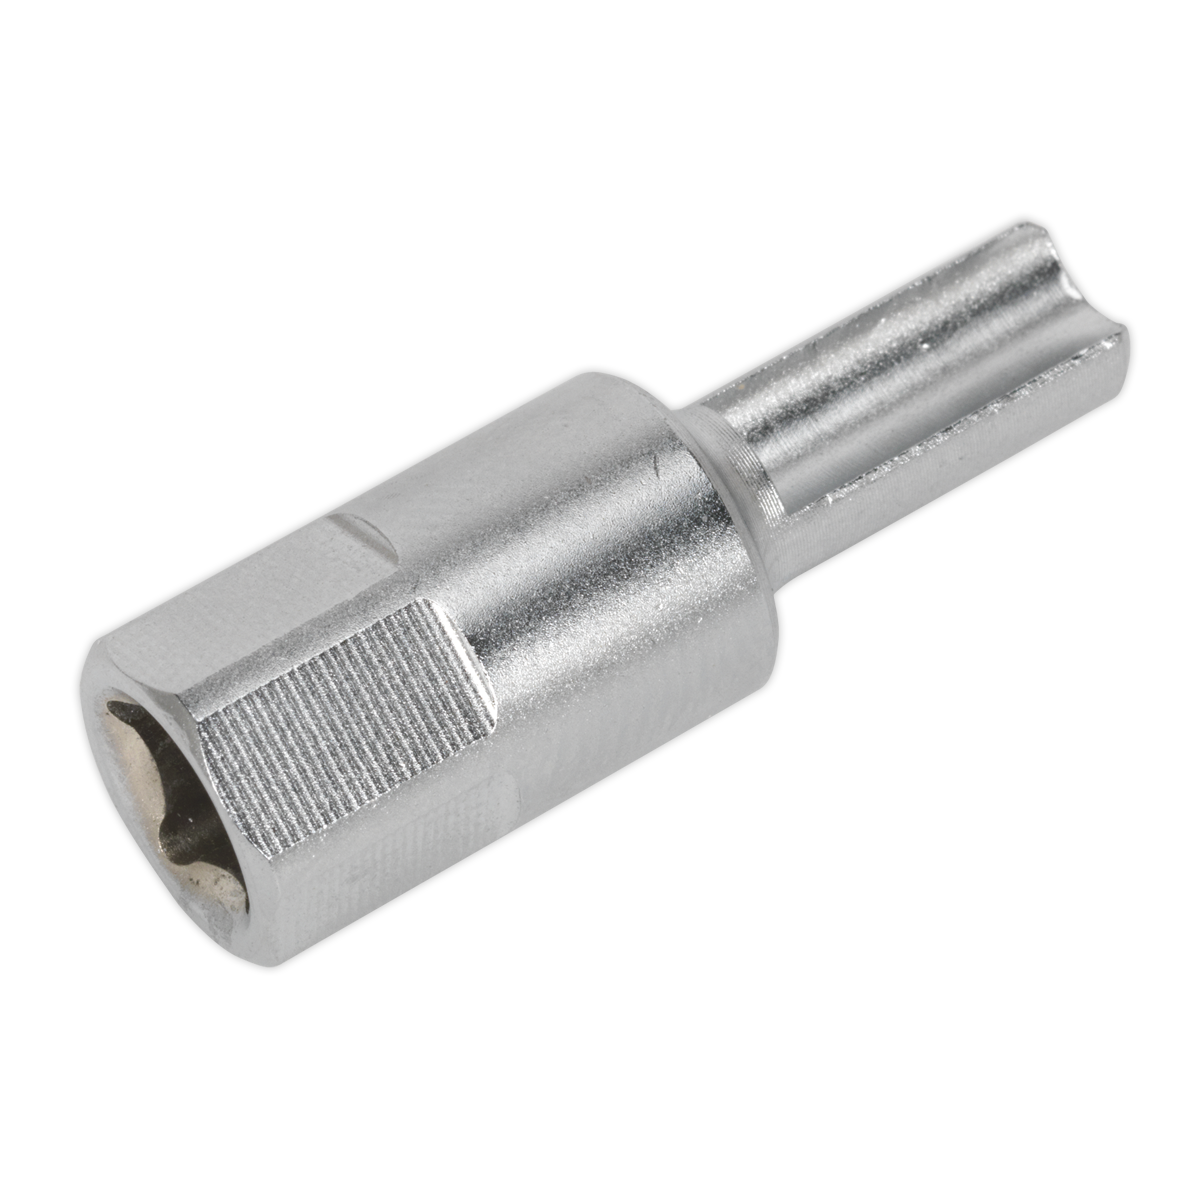 Sealey 1/4"Sq Drive Oil Drain Plug Key - VAG VS652